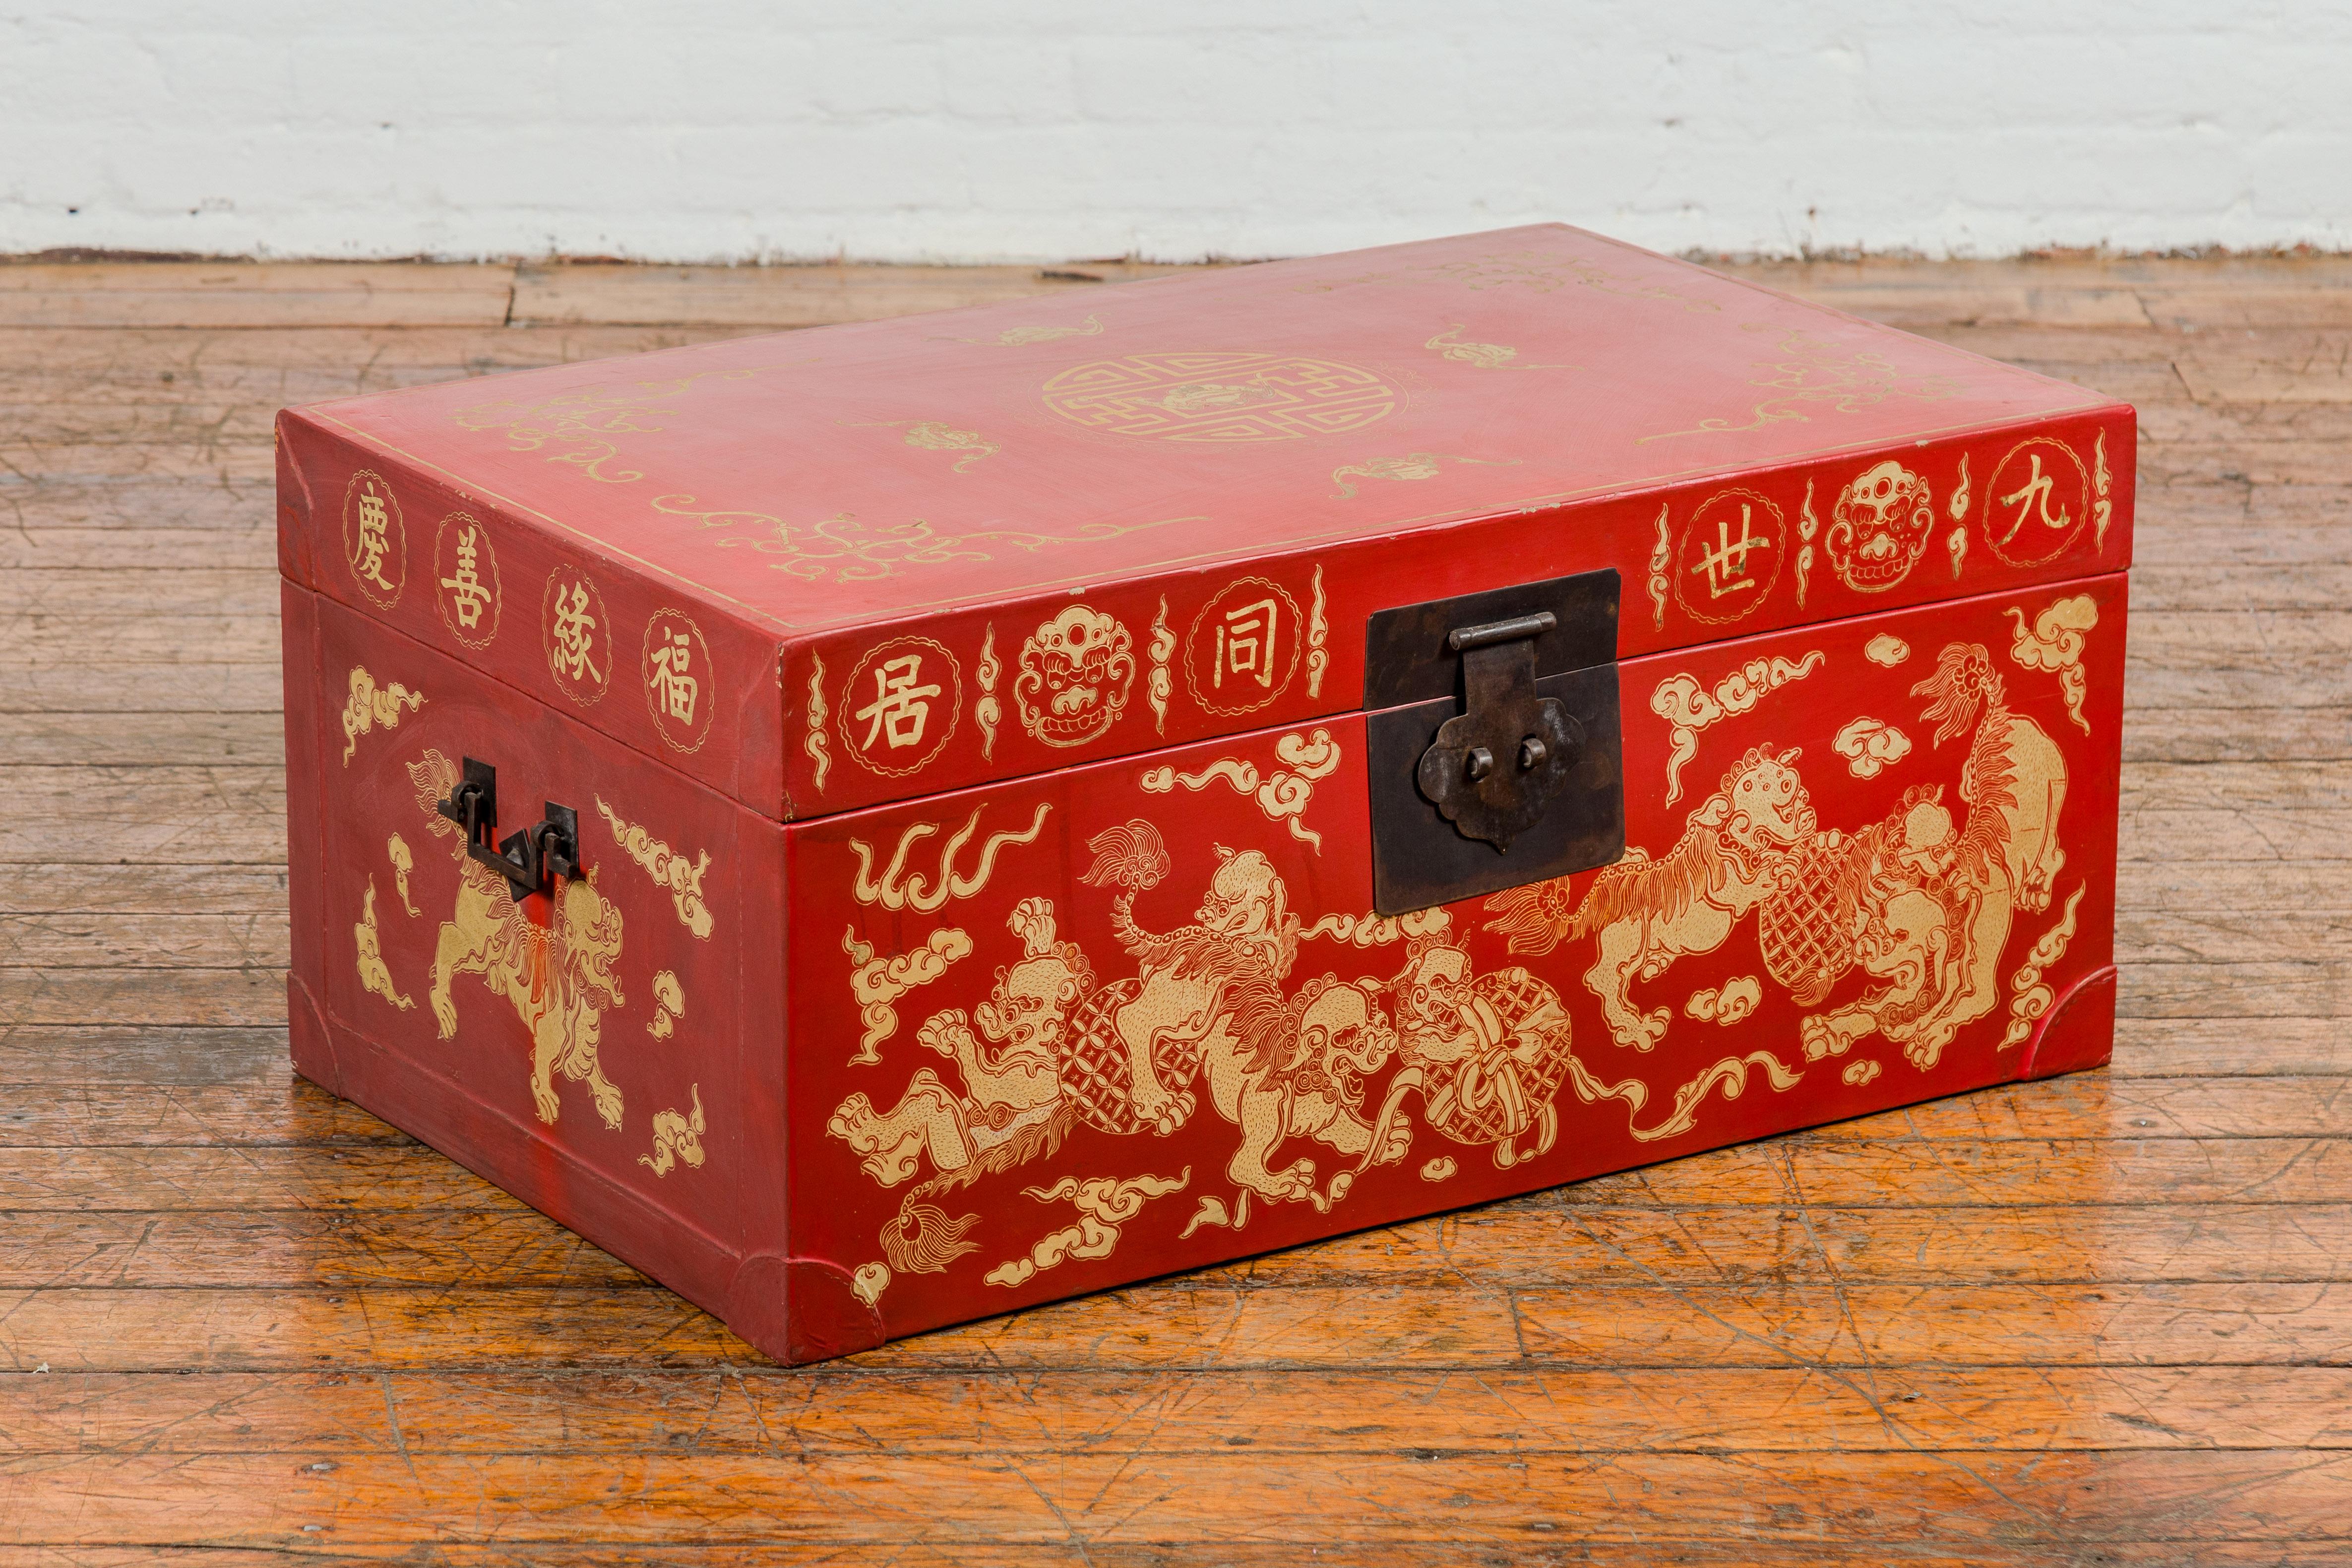 Chinesische Rotlacktruhe im Vintage-Look mit vergoldeten Fledermaus-, Wächterlöwen- und Wolkenmotiven. Entdecken Sie die lebendige Ausstrahlung dieser chinesischen Vintage-Truhe aus rotem Lack, die Funktionalität und verheißungsvolles Design